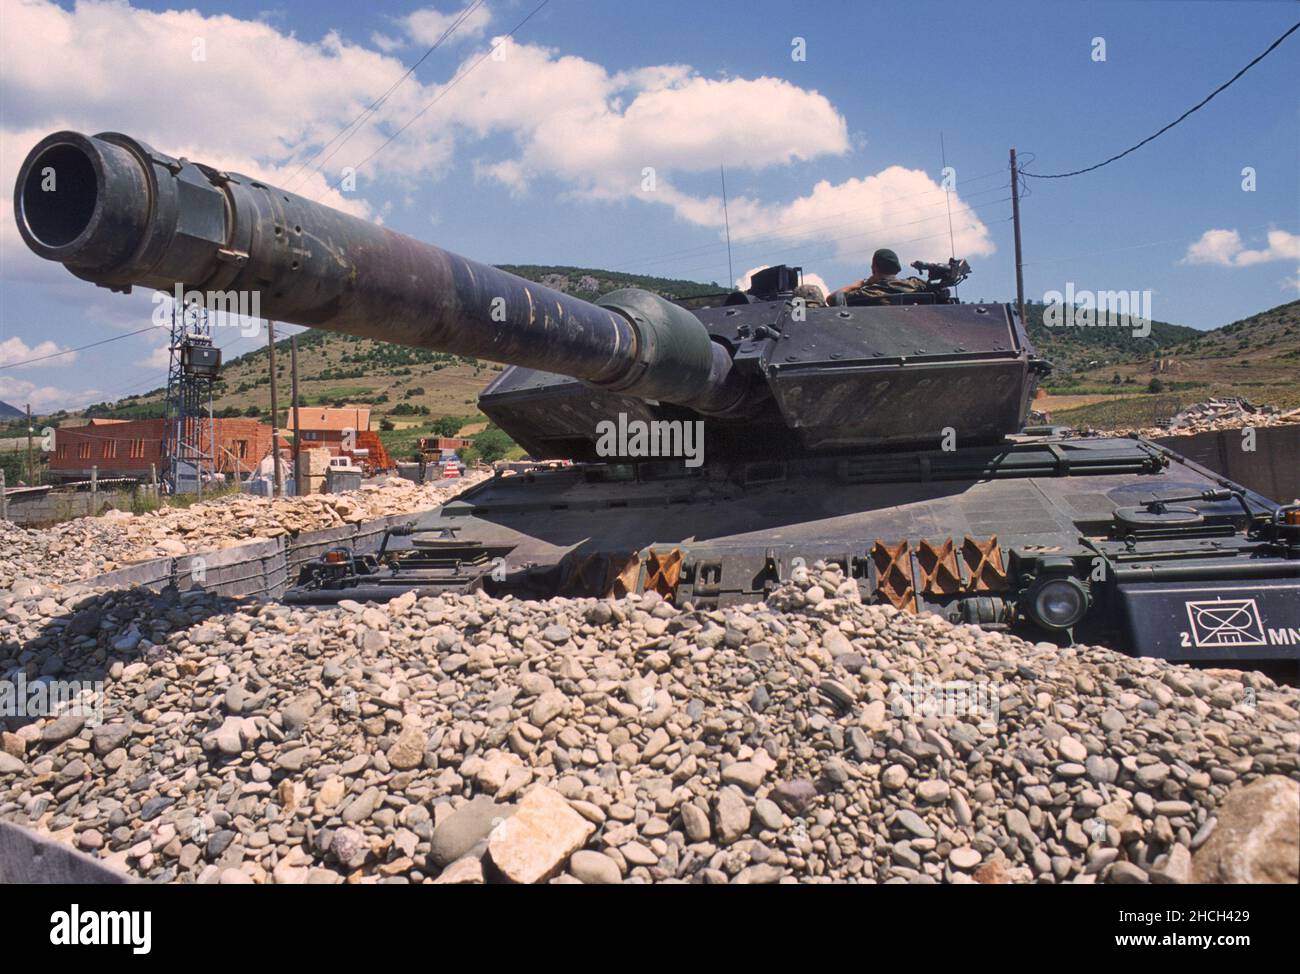 - NATO intervention in Kosovo, checkpoint of the German army with a Leopard 2 tank near the town of Orahovac (July 2000)   - Intervento NATO in Kossovo, checkpoint dell'esercito tedesco con un carro armato Leopard 2 presso la città di Orahovac (Luglio 2000) Stock Photo